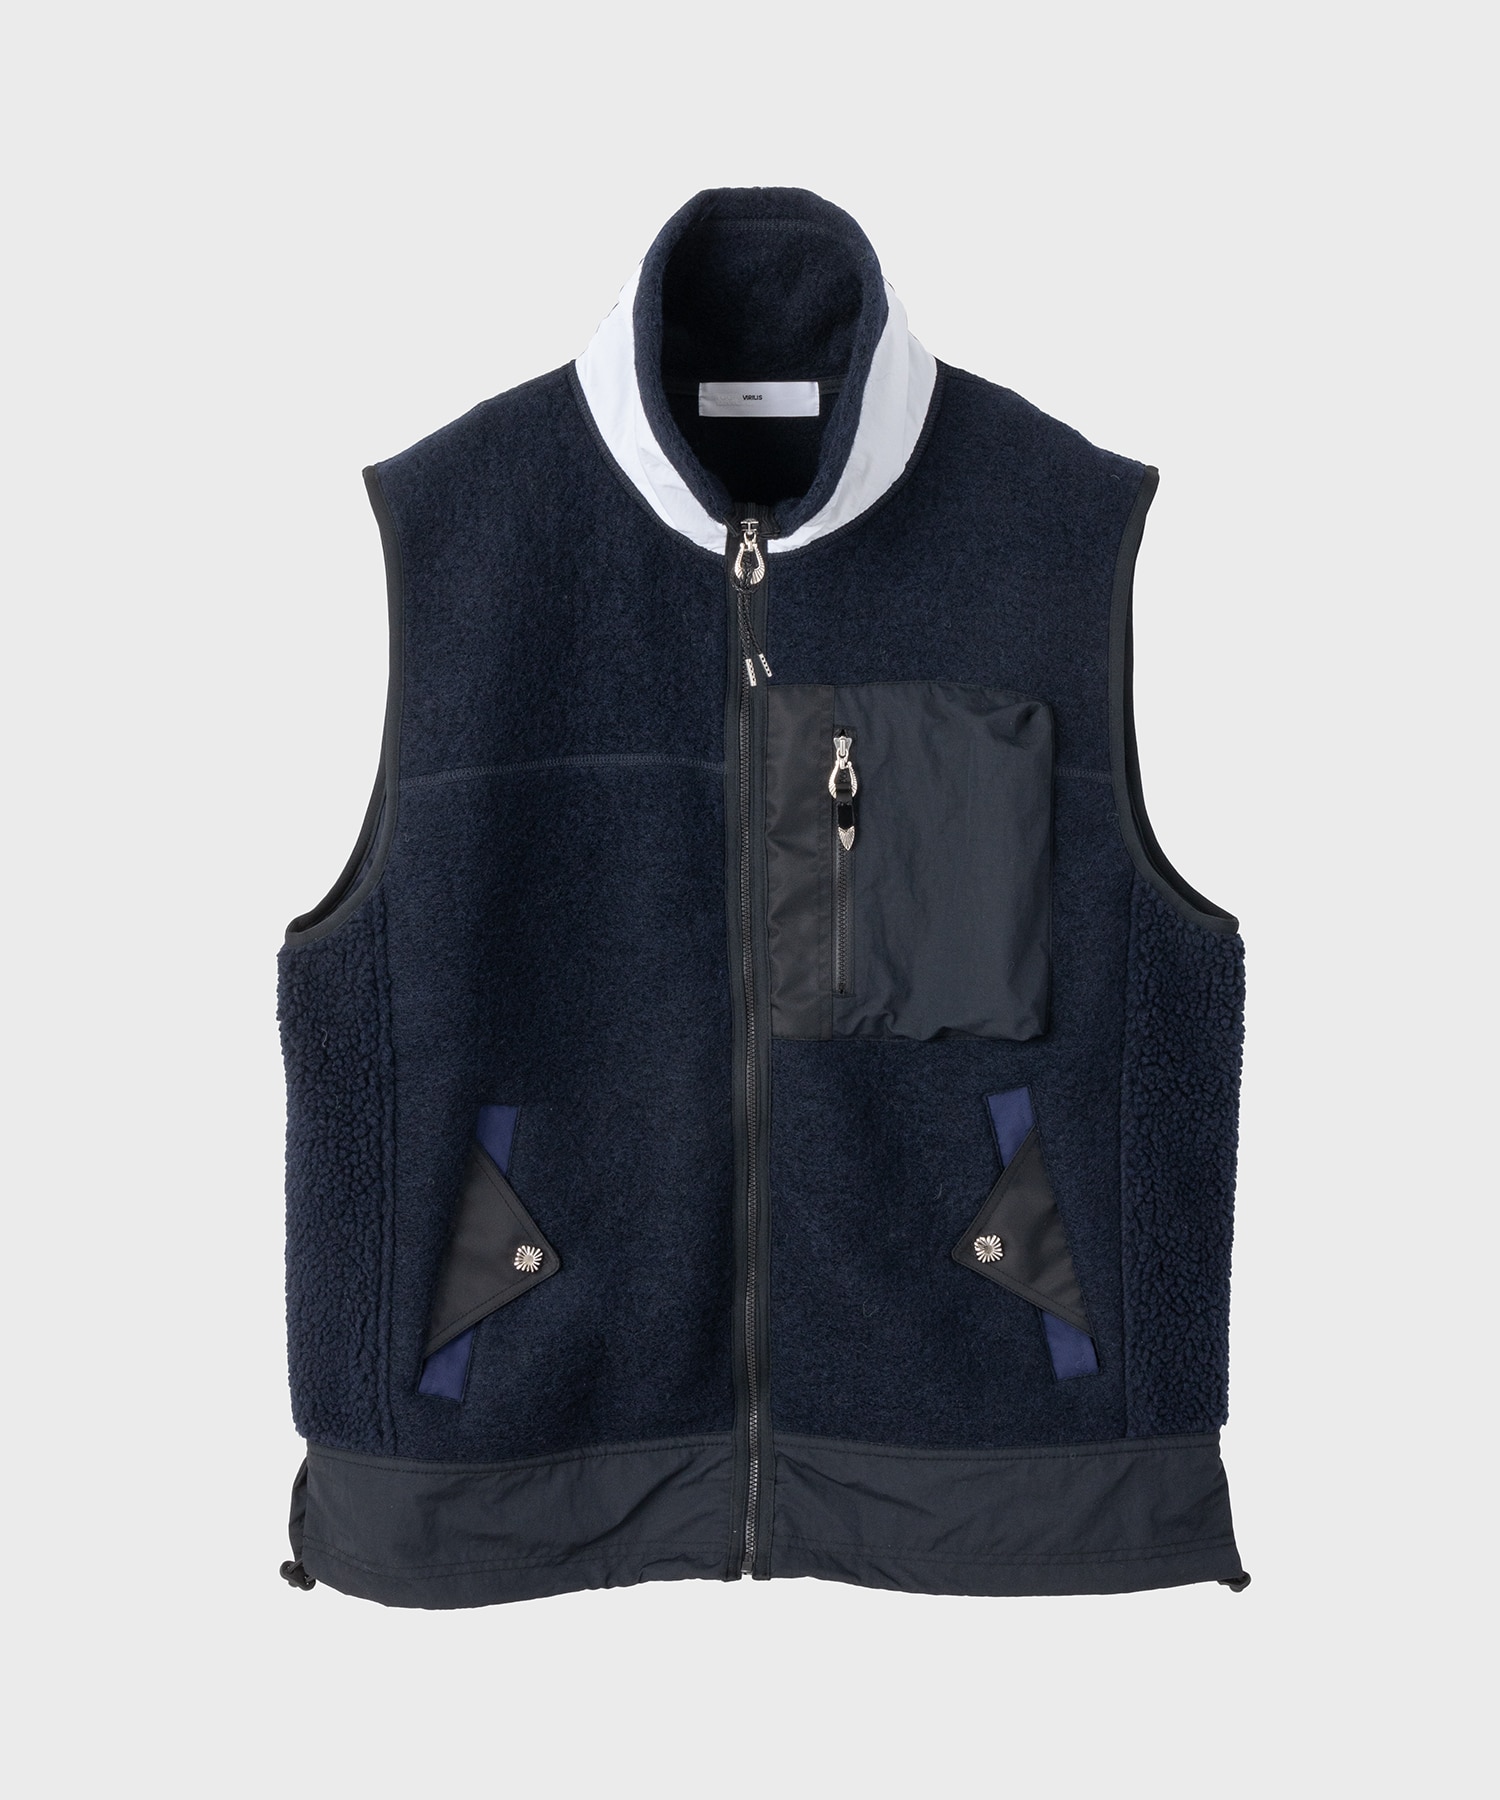 Wool jersey vest